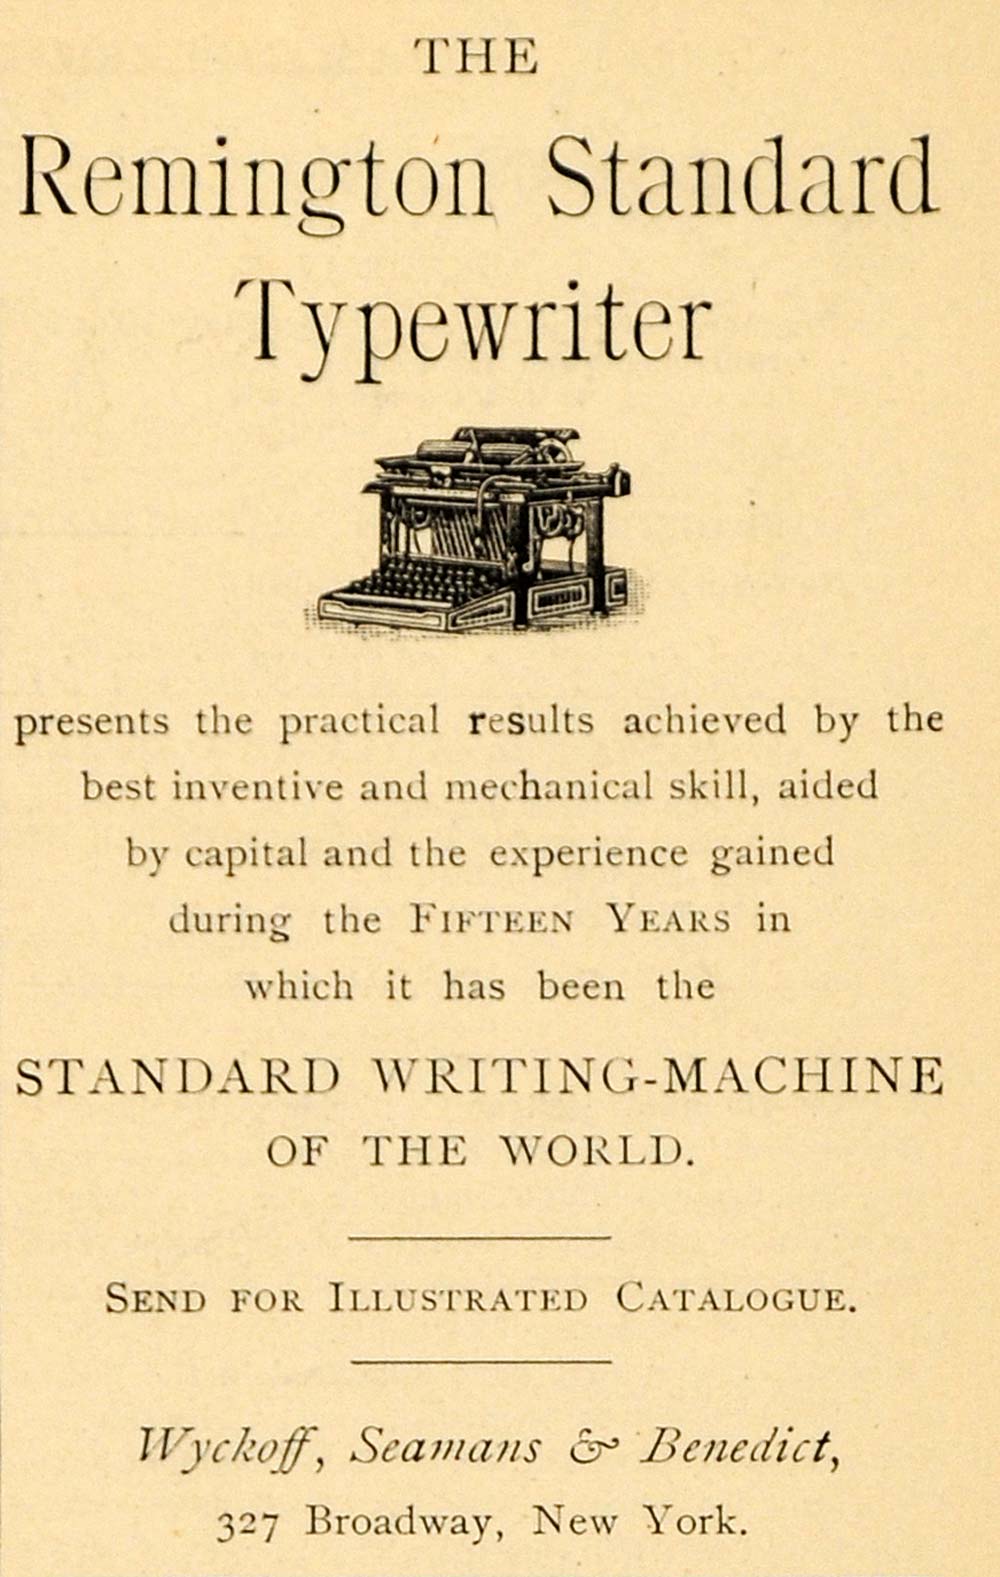 1891 Ad Wyckoff Seamans Benedict Remington Typewriter - ORIGINAL TFO1